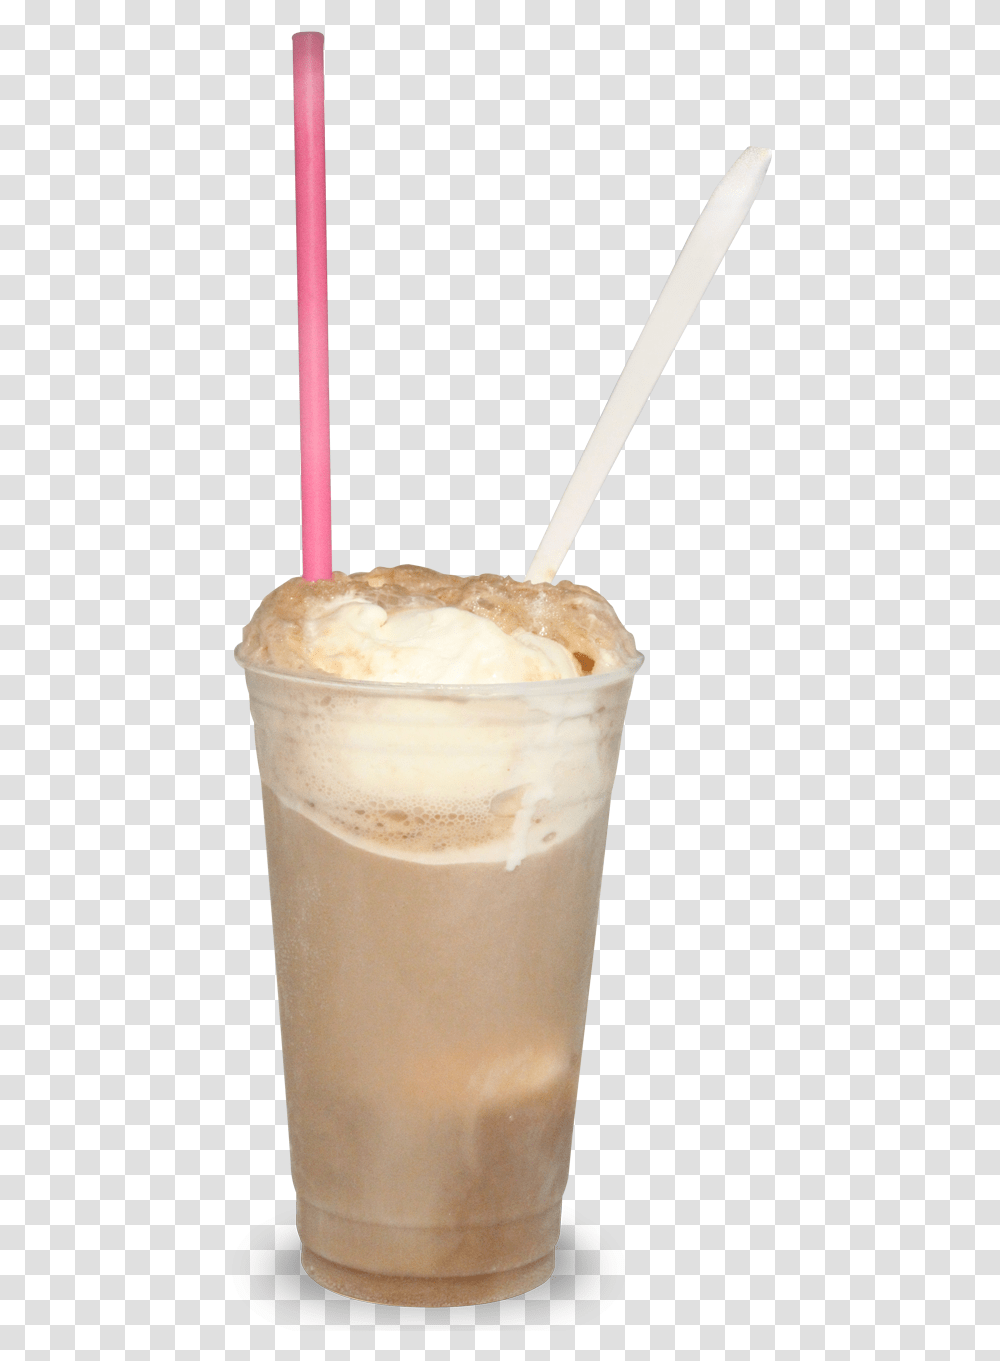 Horchata Download Frapp Coffee, Milk, Beverage, Drink, Juice Transparent Png